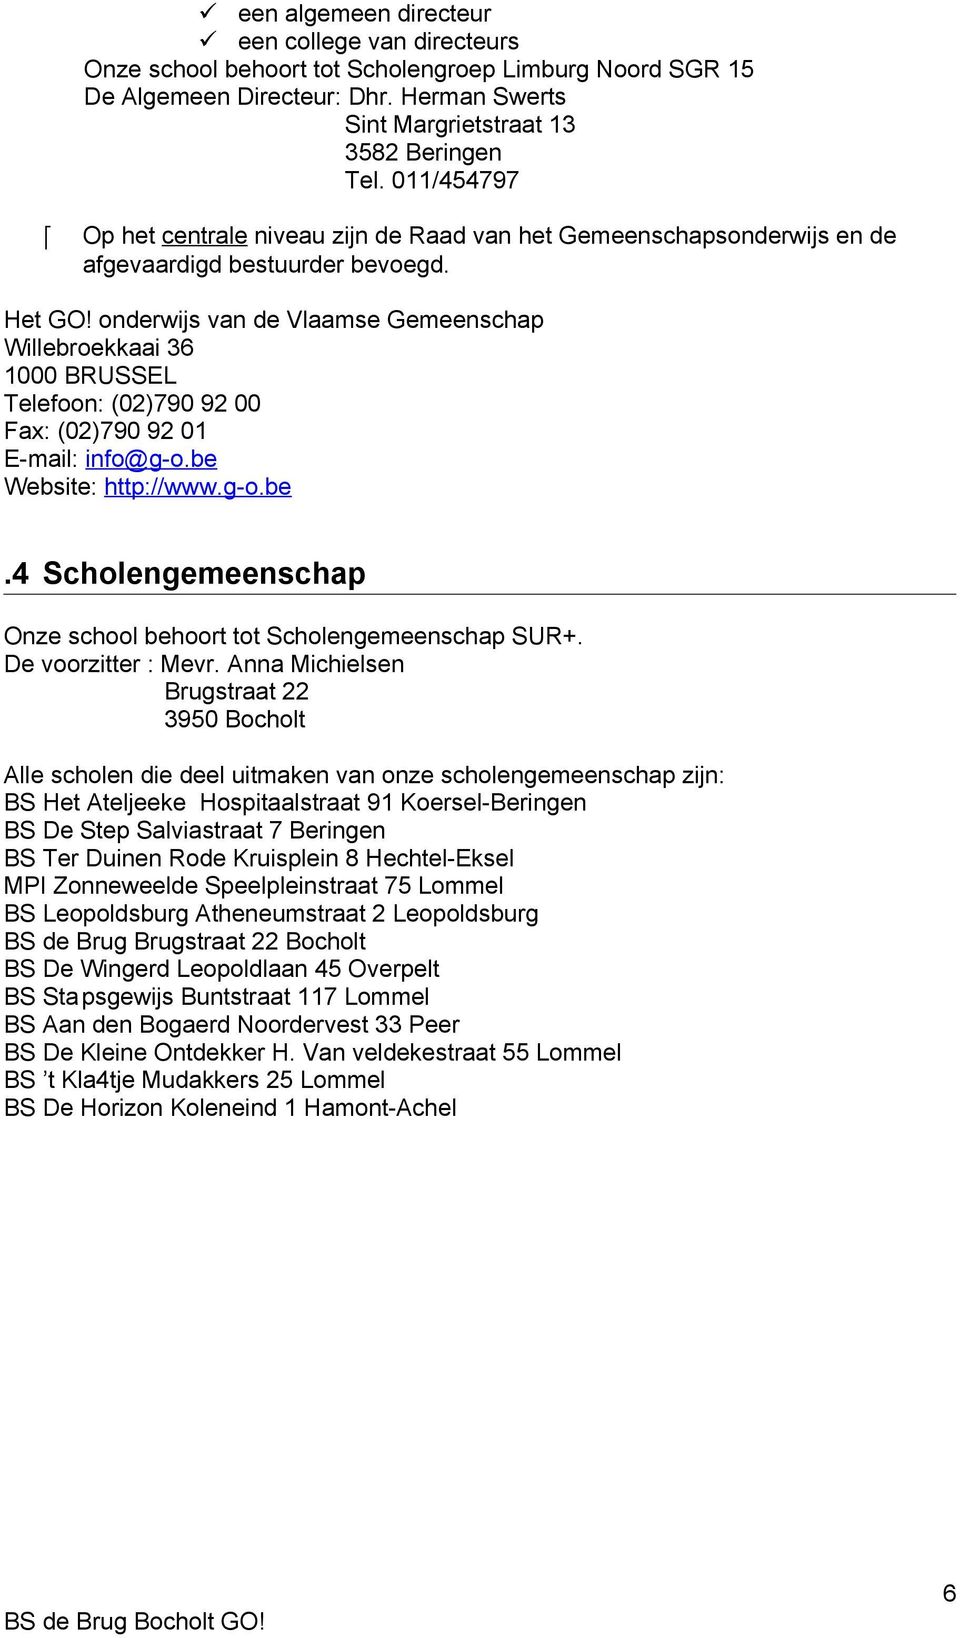 onderwijs van de Vlaamse Gemeenschap Willebroekkaai 36 1000 BRUSSEL Telefoon: (02)790 92 00 Fax: (02)790 92 01 E-mail: info@g-o.be Website: http://www.g-o.be.4 Scholengemeenschap Onze school behoort tot Scholengemeenschap SUR+.